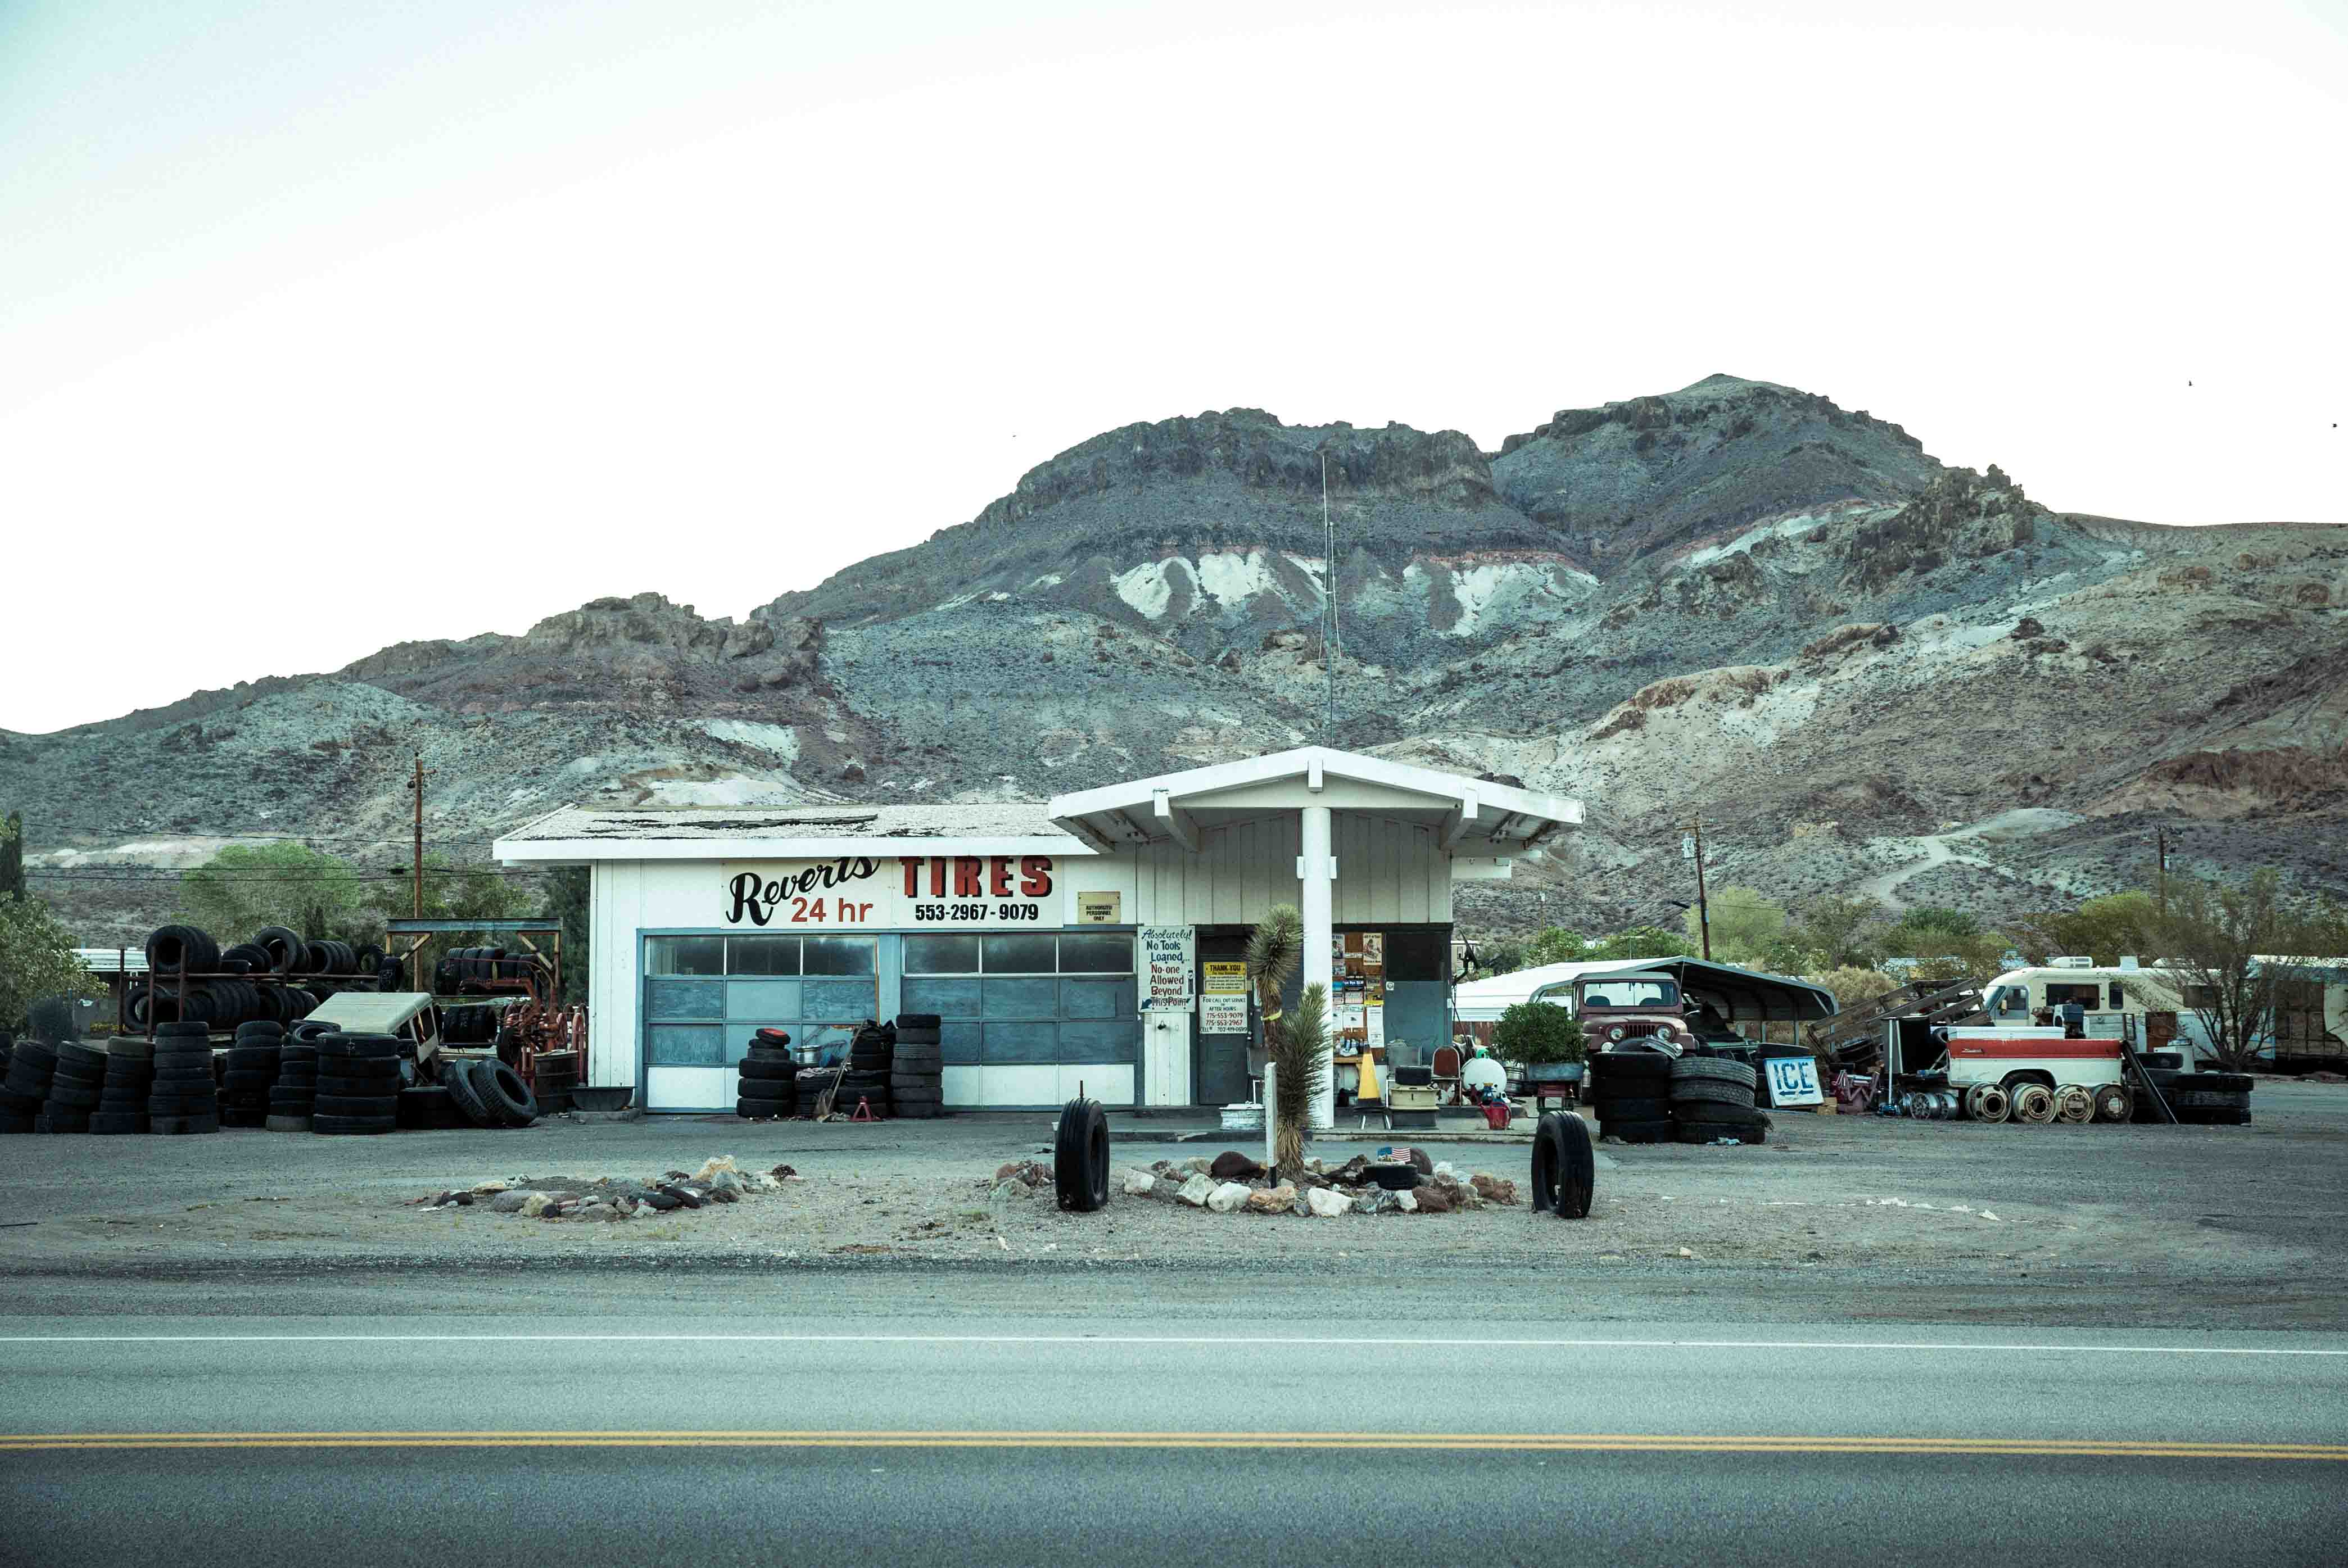 Beatty Death valley vallée de la mort Las Vegas Los Angeles San Francisco blog carnet de voyage voiture américaine station essence désert montagnes